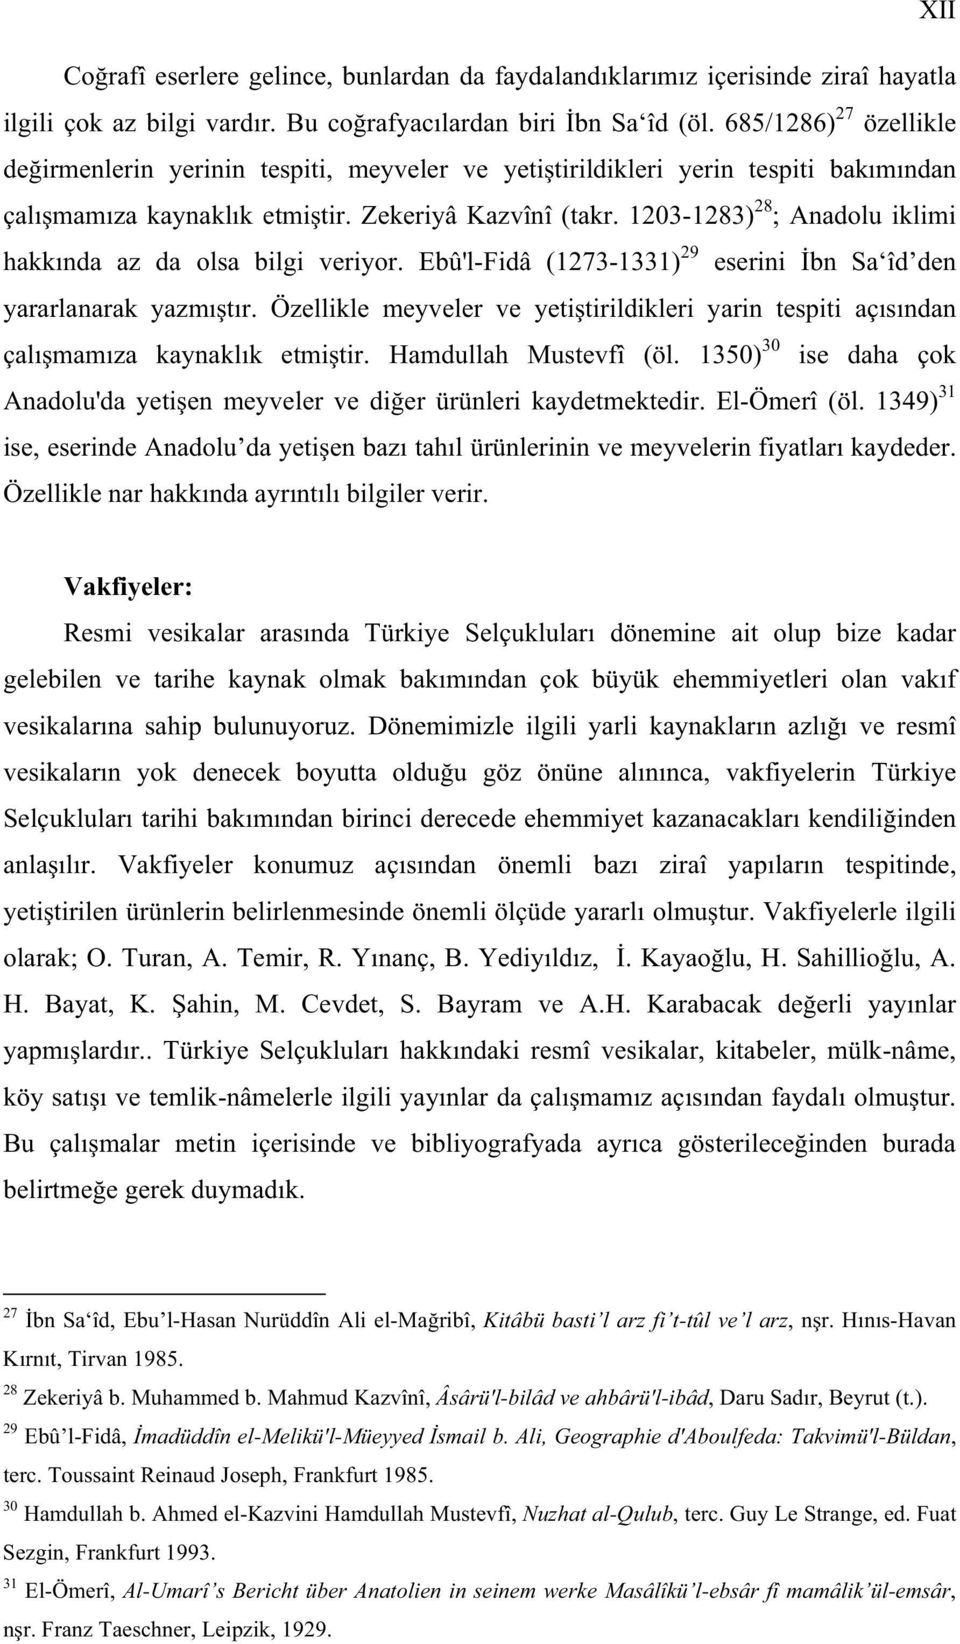 1203-1283) 28 ; Anadolu iklimi hakk nda az da olsa bilgi veriyor. Ebû'l-Fidâ (1273-1331) 29 eserini bn Sa îd den yararlanarak yazm t r.